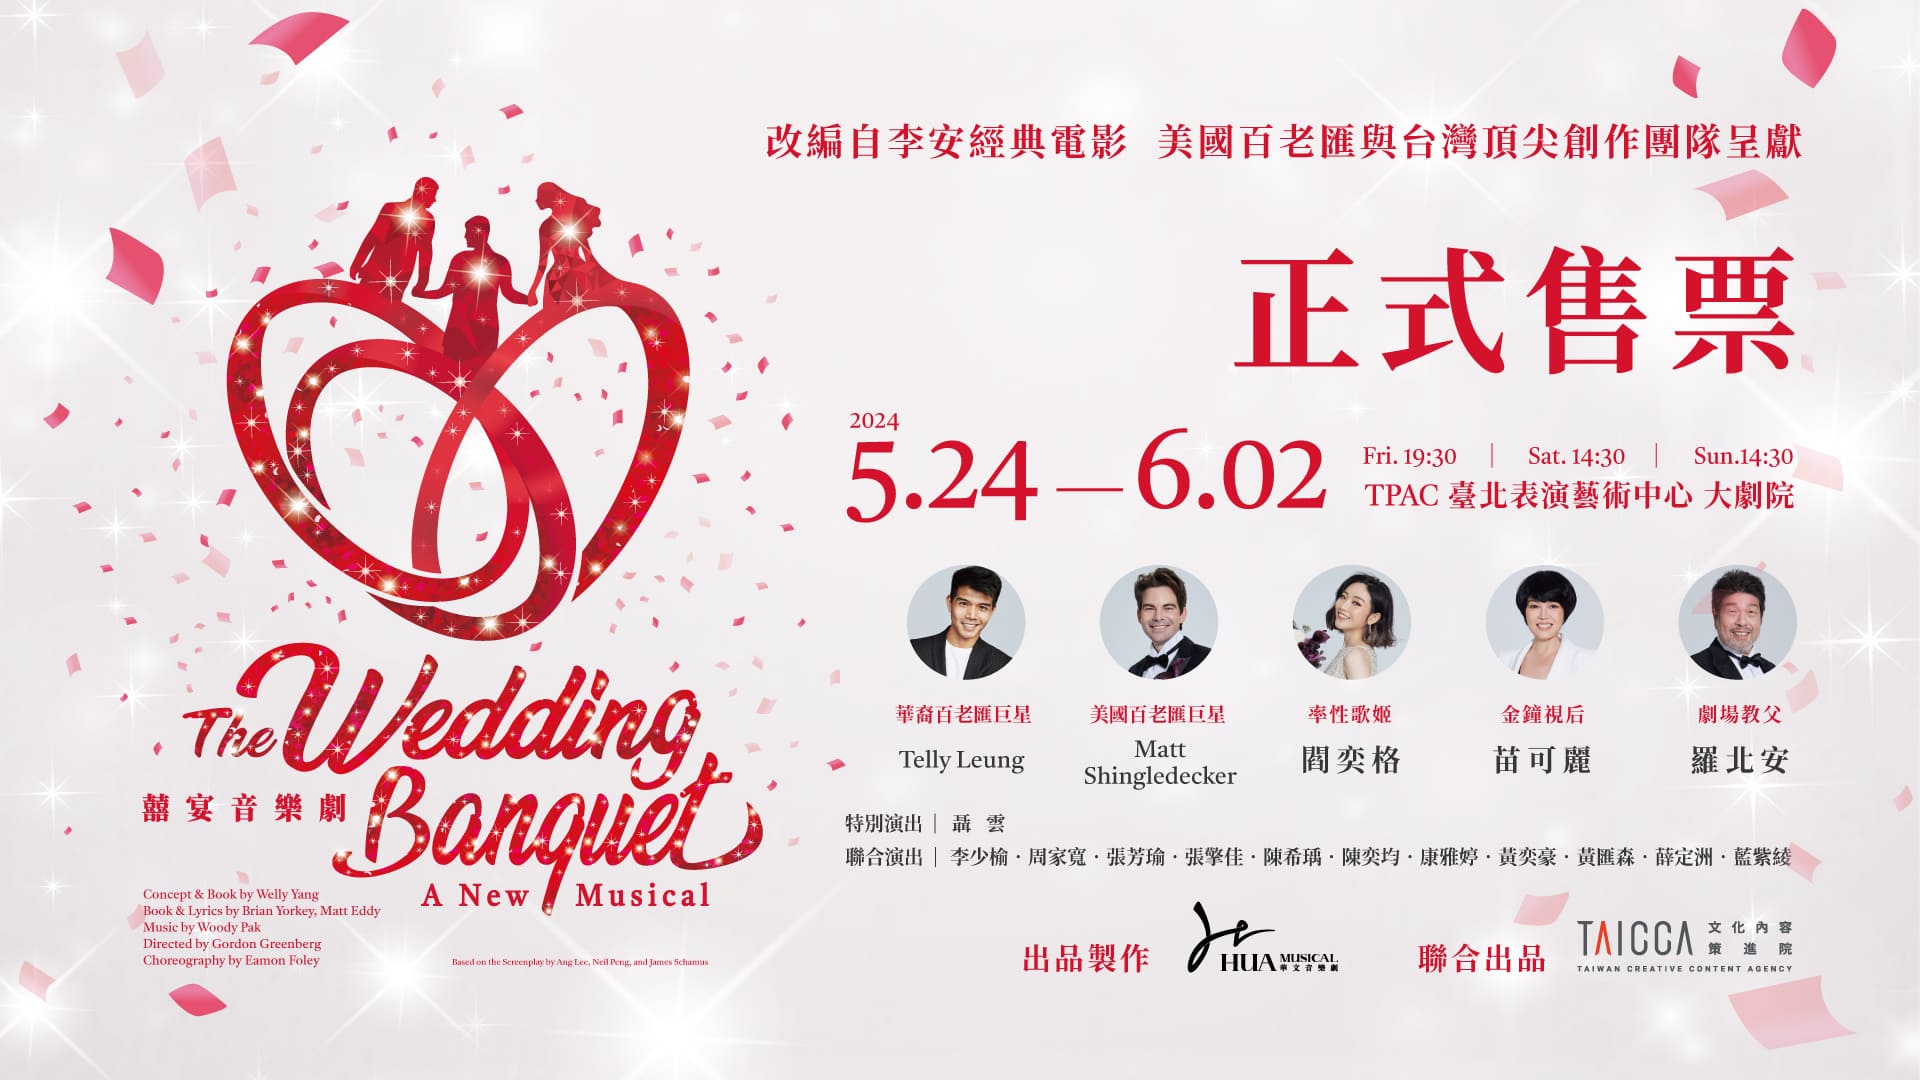 upcoming3_wedding banquet